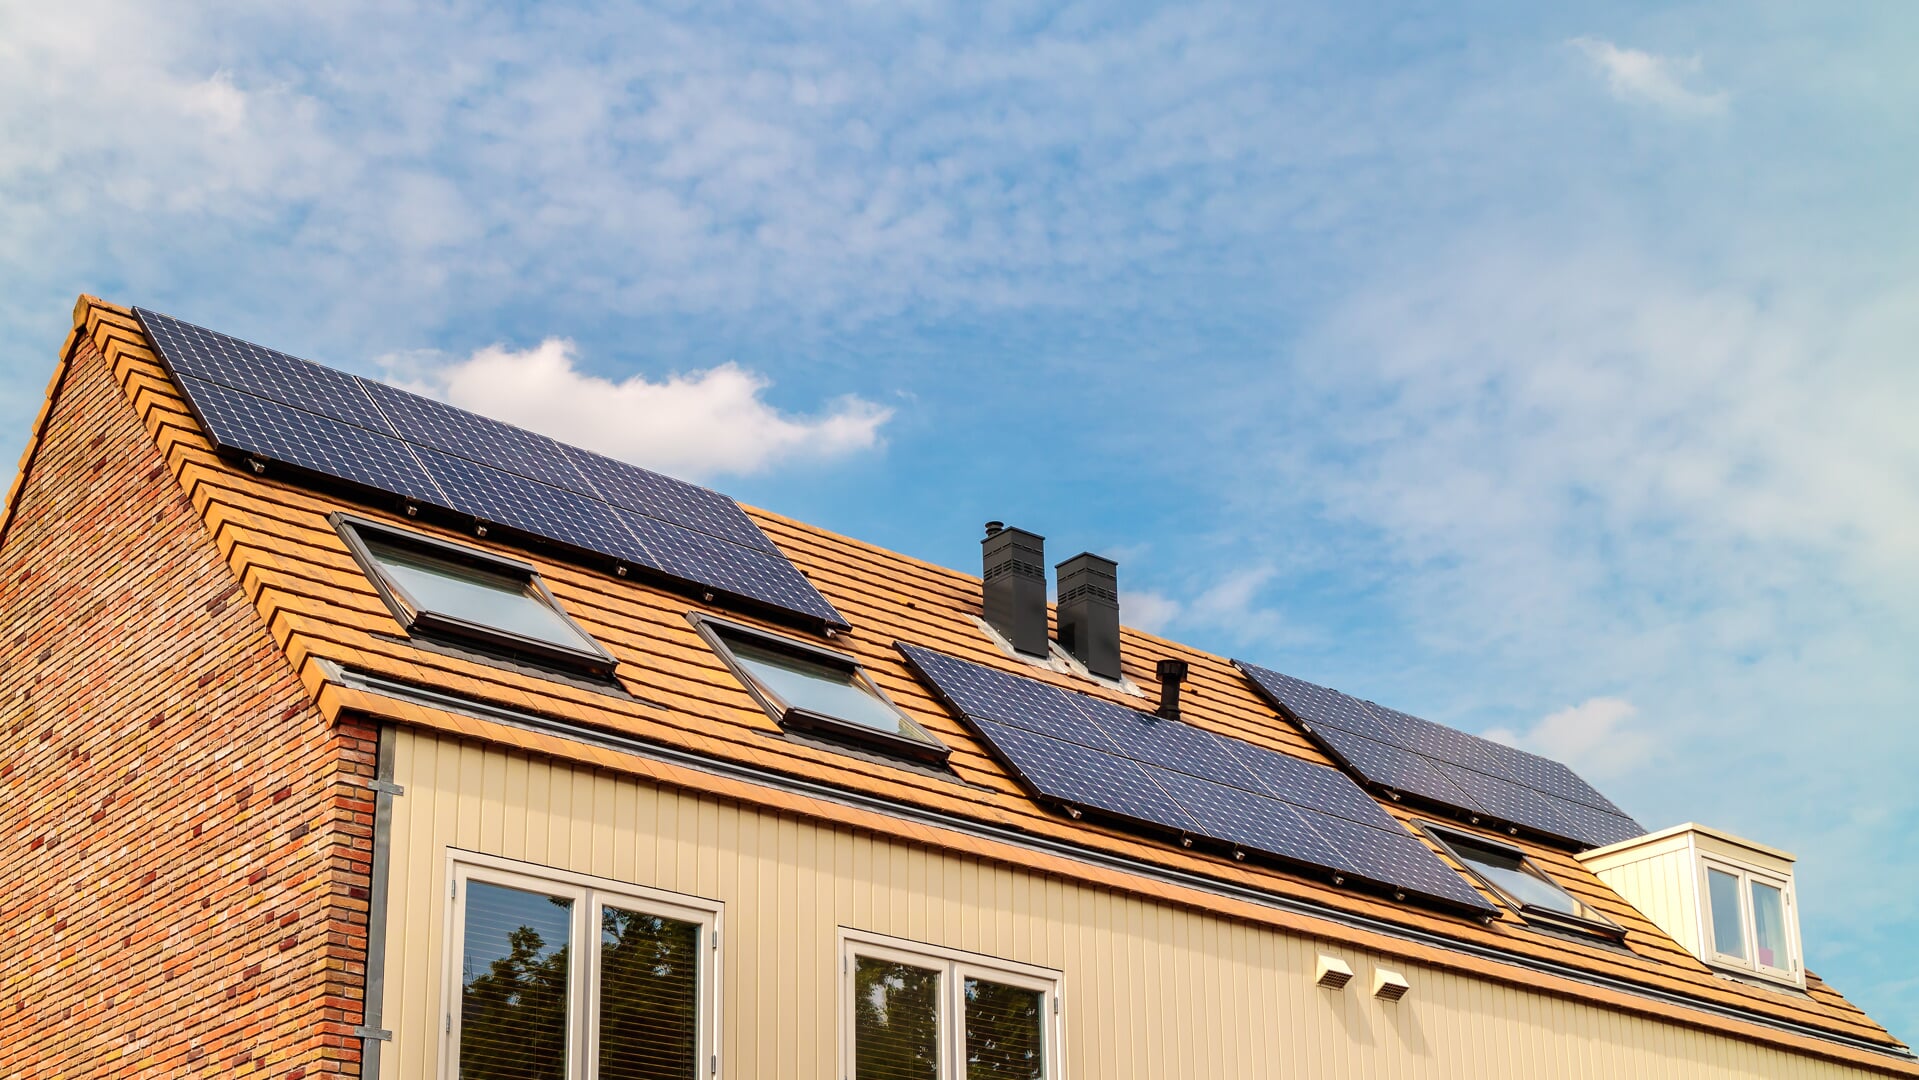 1 op de 3 woningen in Westland levert energie met zonnepanelen.